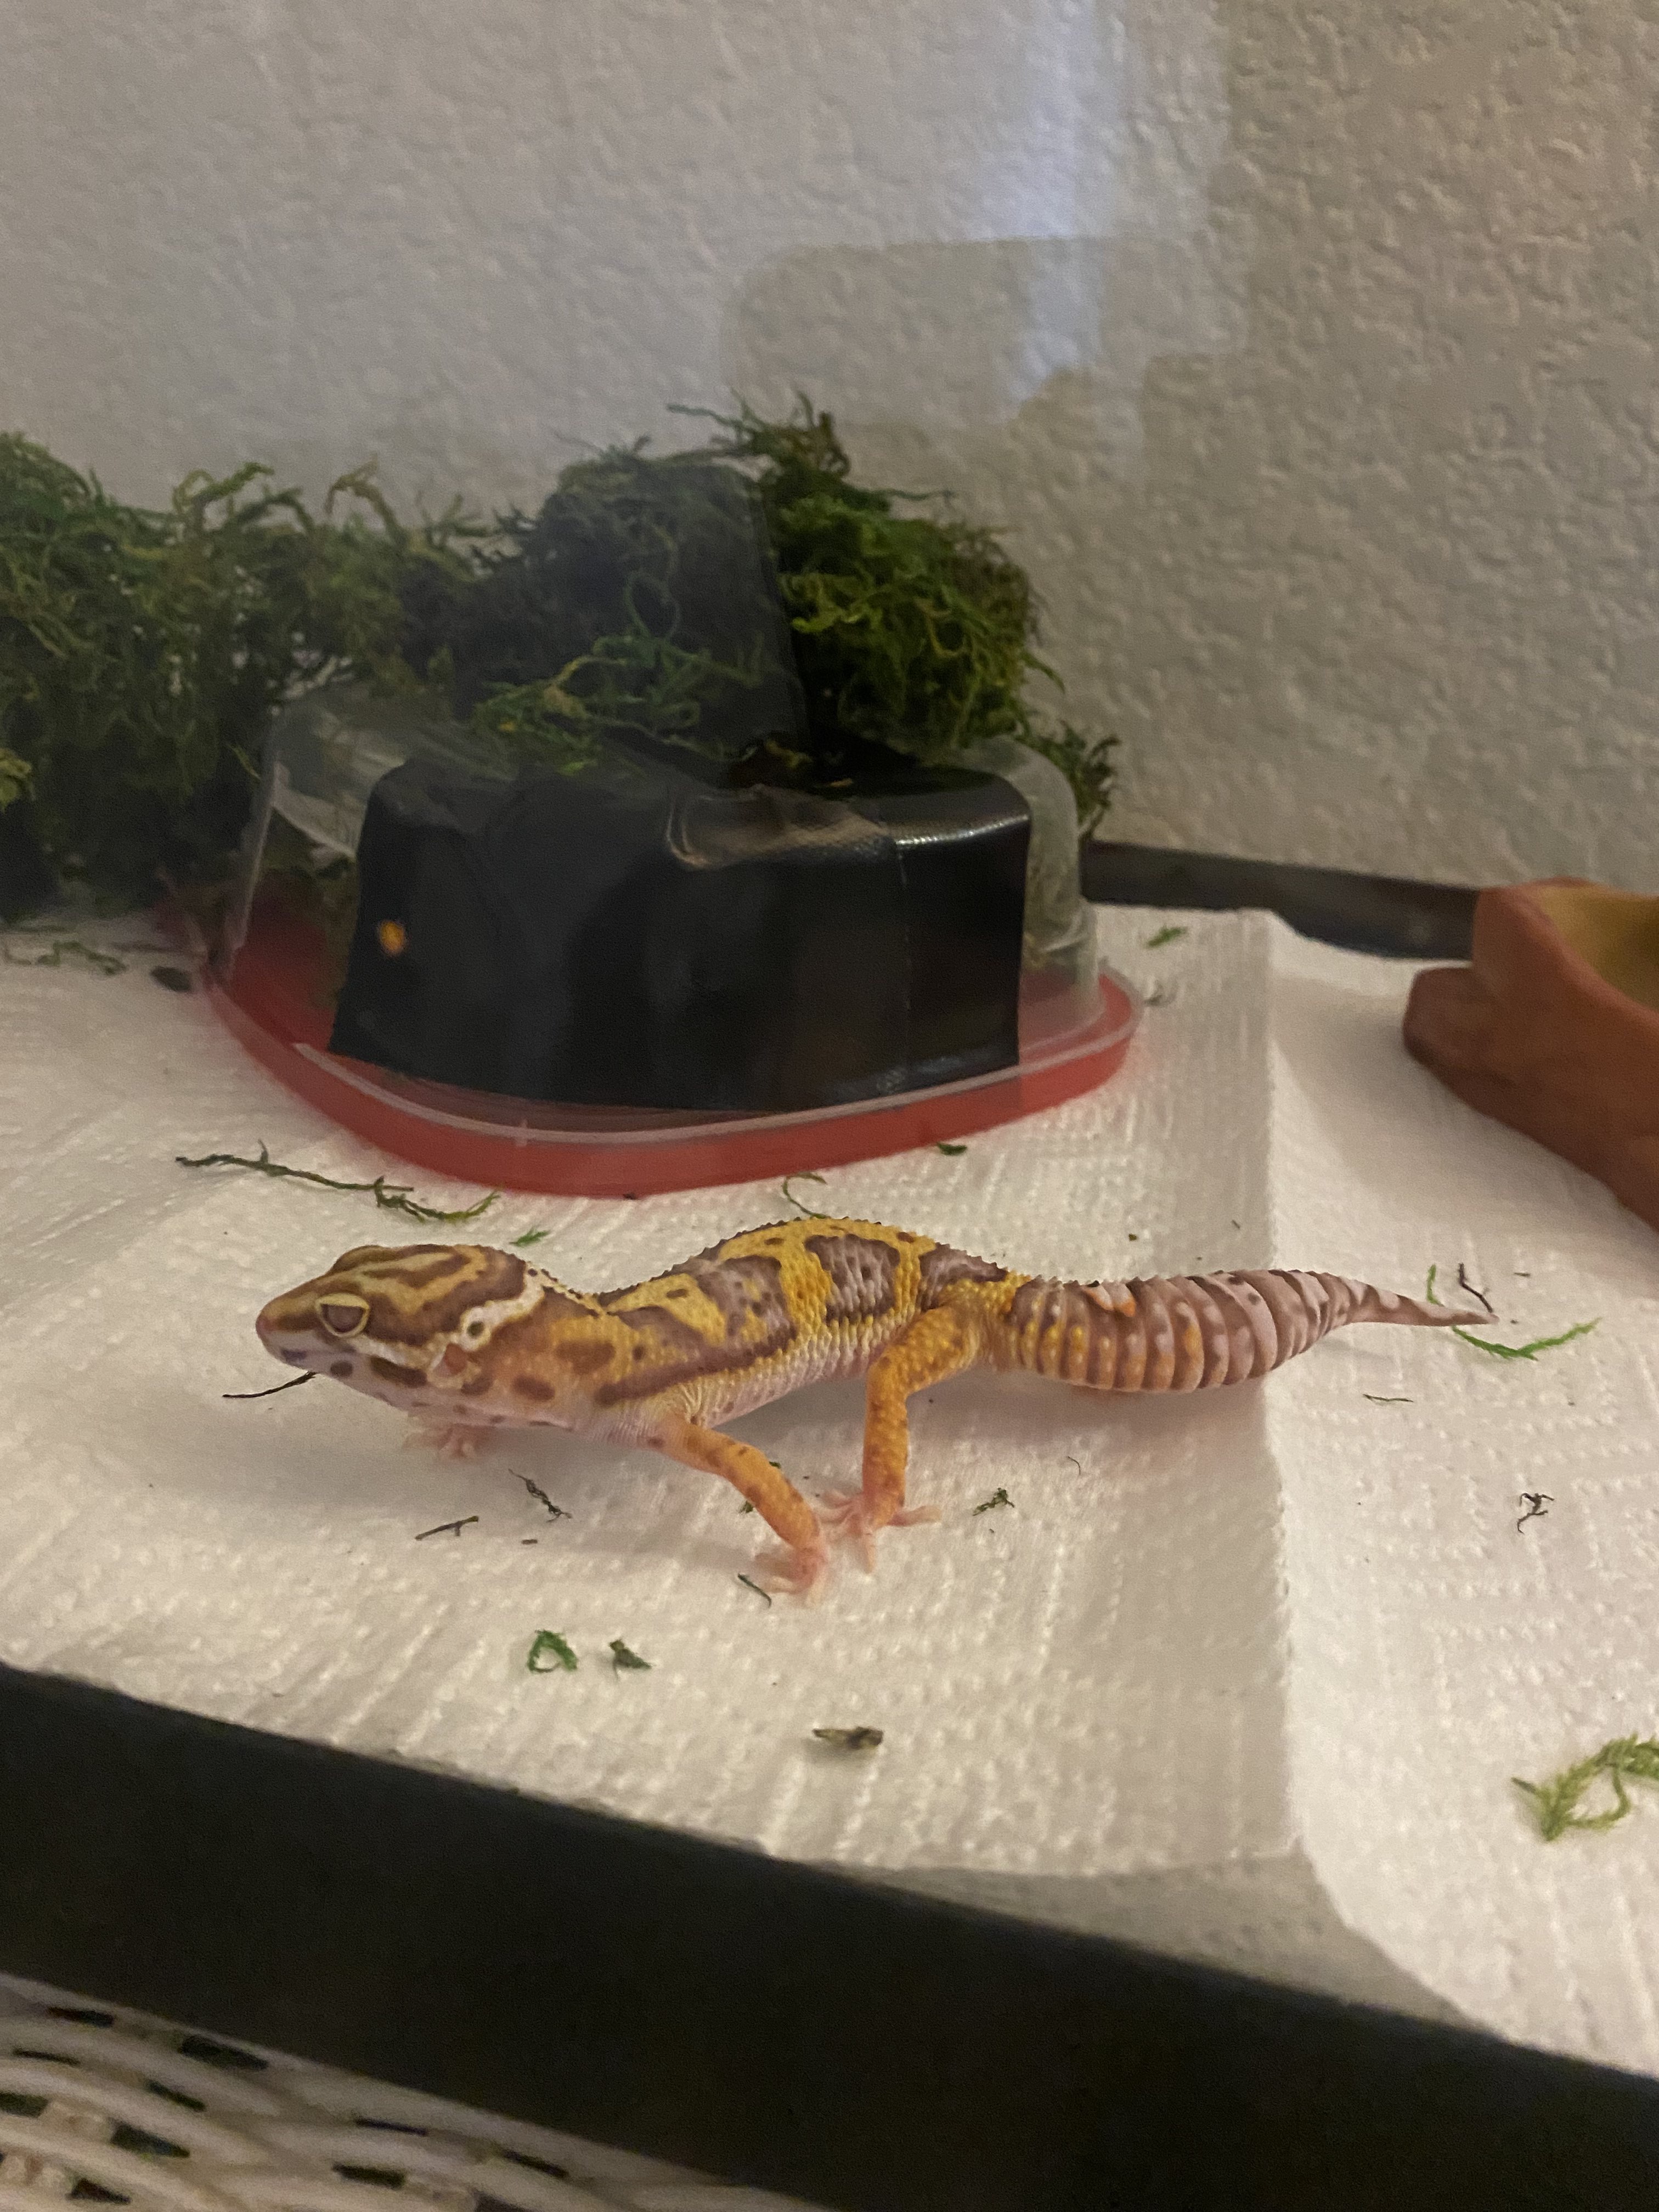 First Gecko!